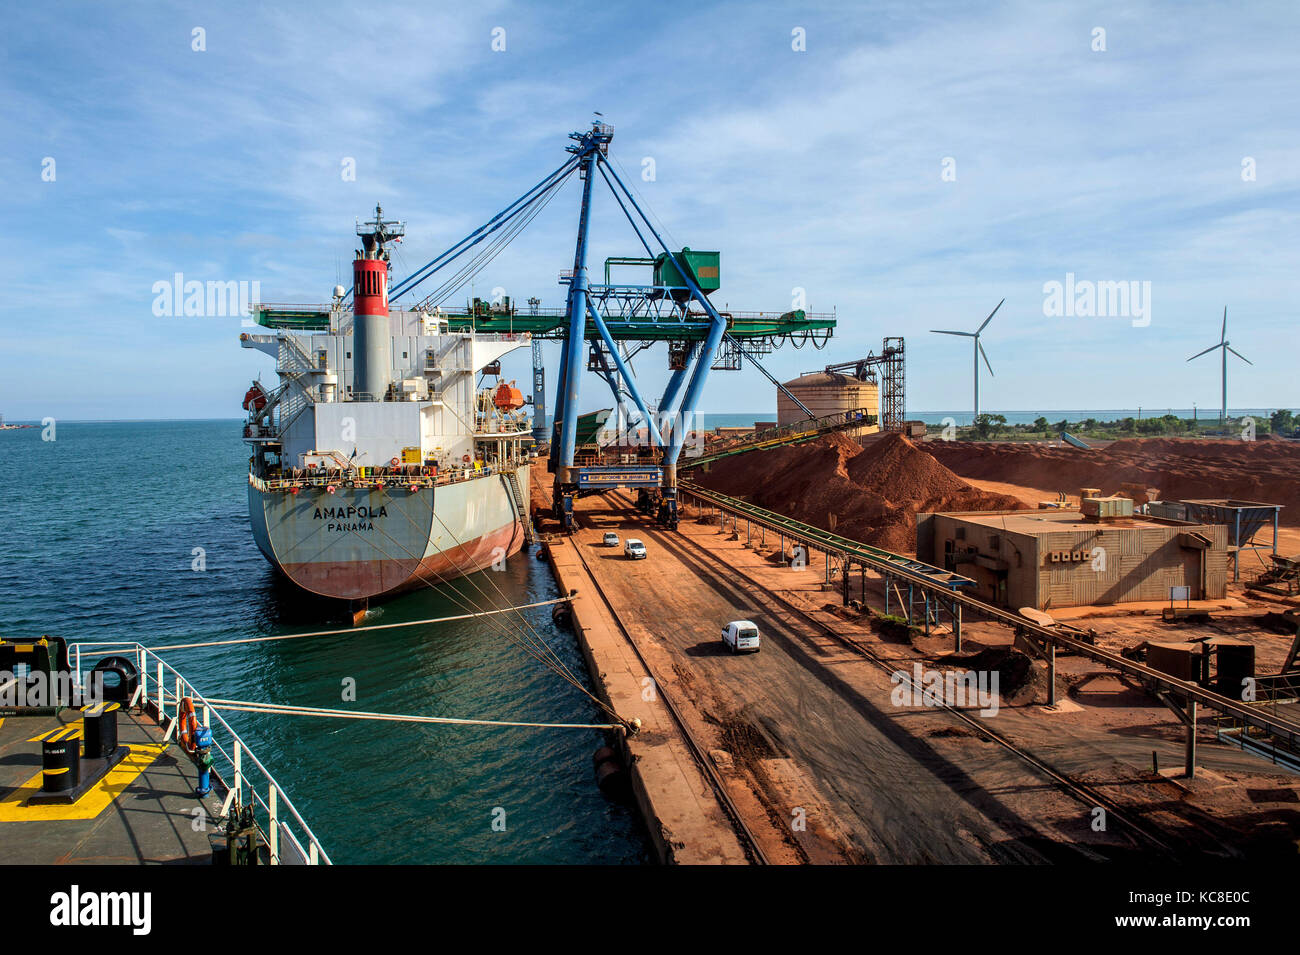 Fos-sur-Mer (sud-est della Francia). 2015/04/24. O gestore di terminale di porta Marseille-Fos. "Amapola', Maltese nave cargo, a fianco della banchina Foto Stock